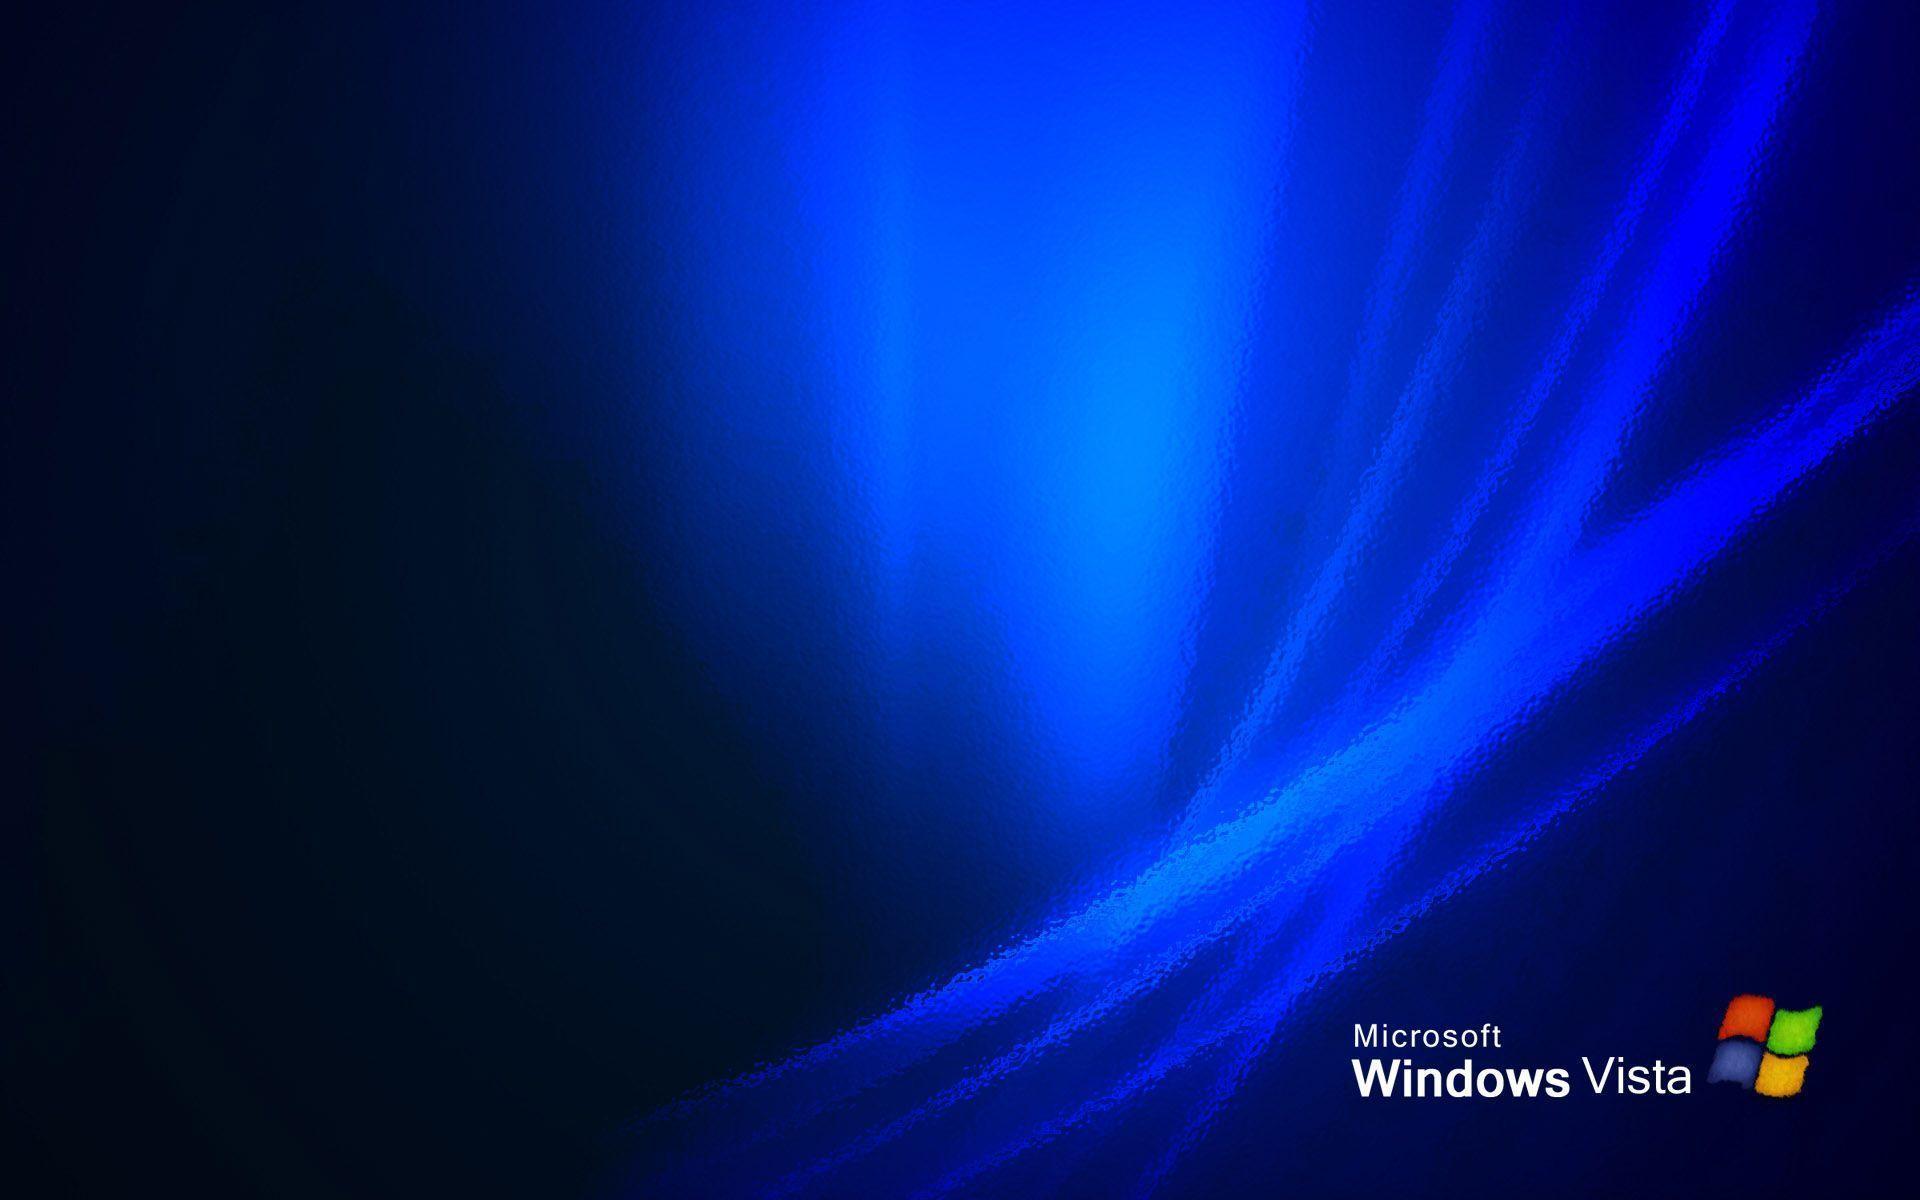 Windows Vista Wallpaper Blue Bliss By Scimiazzurro D M Muj